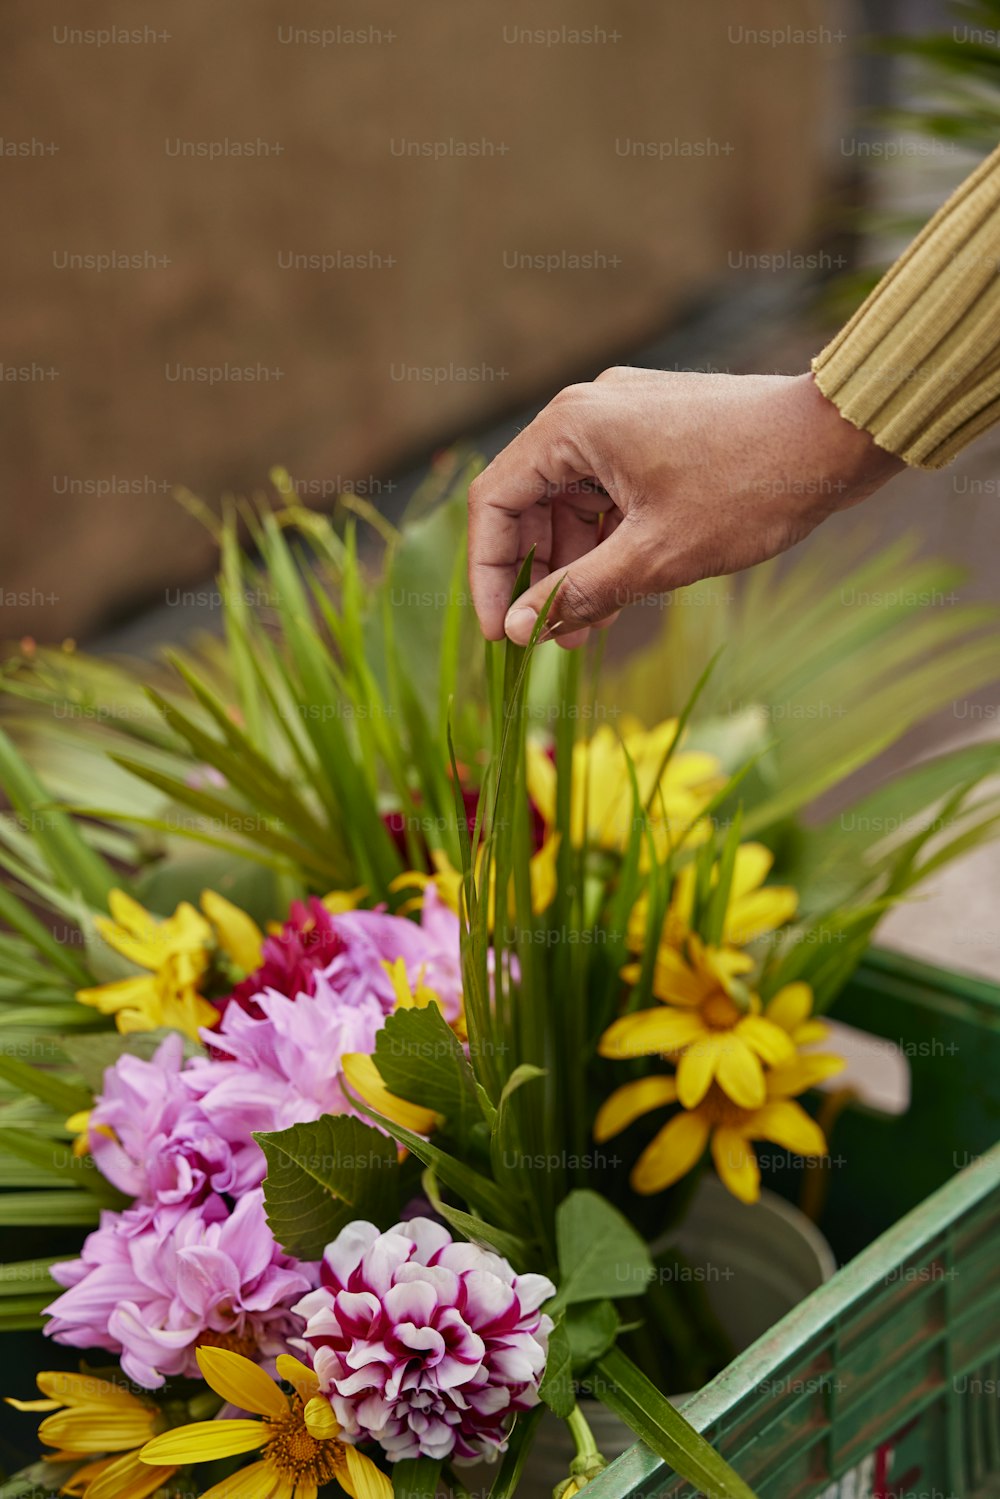 Una persona poniendo flores en un recipiente verde